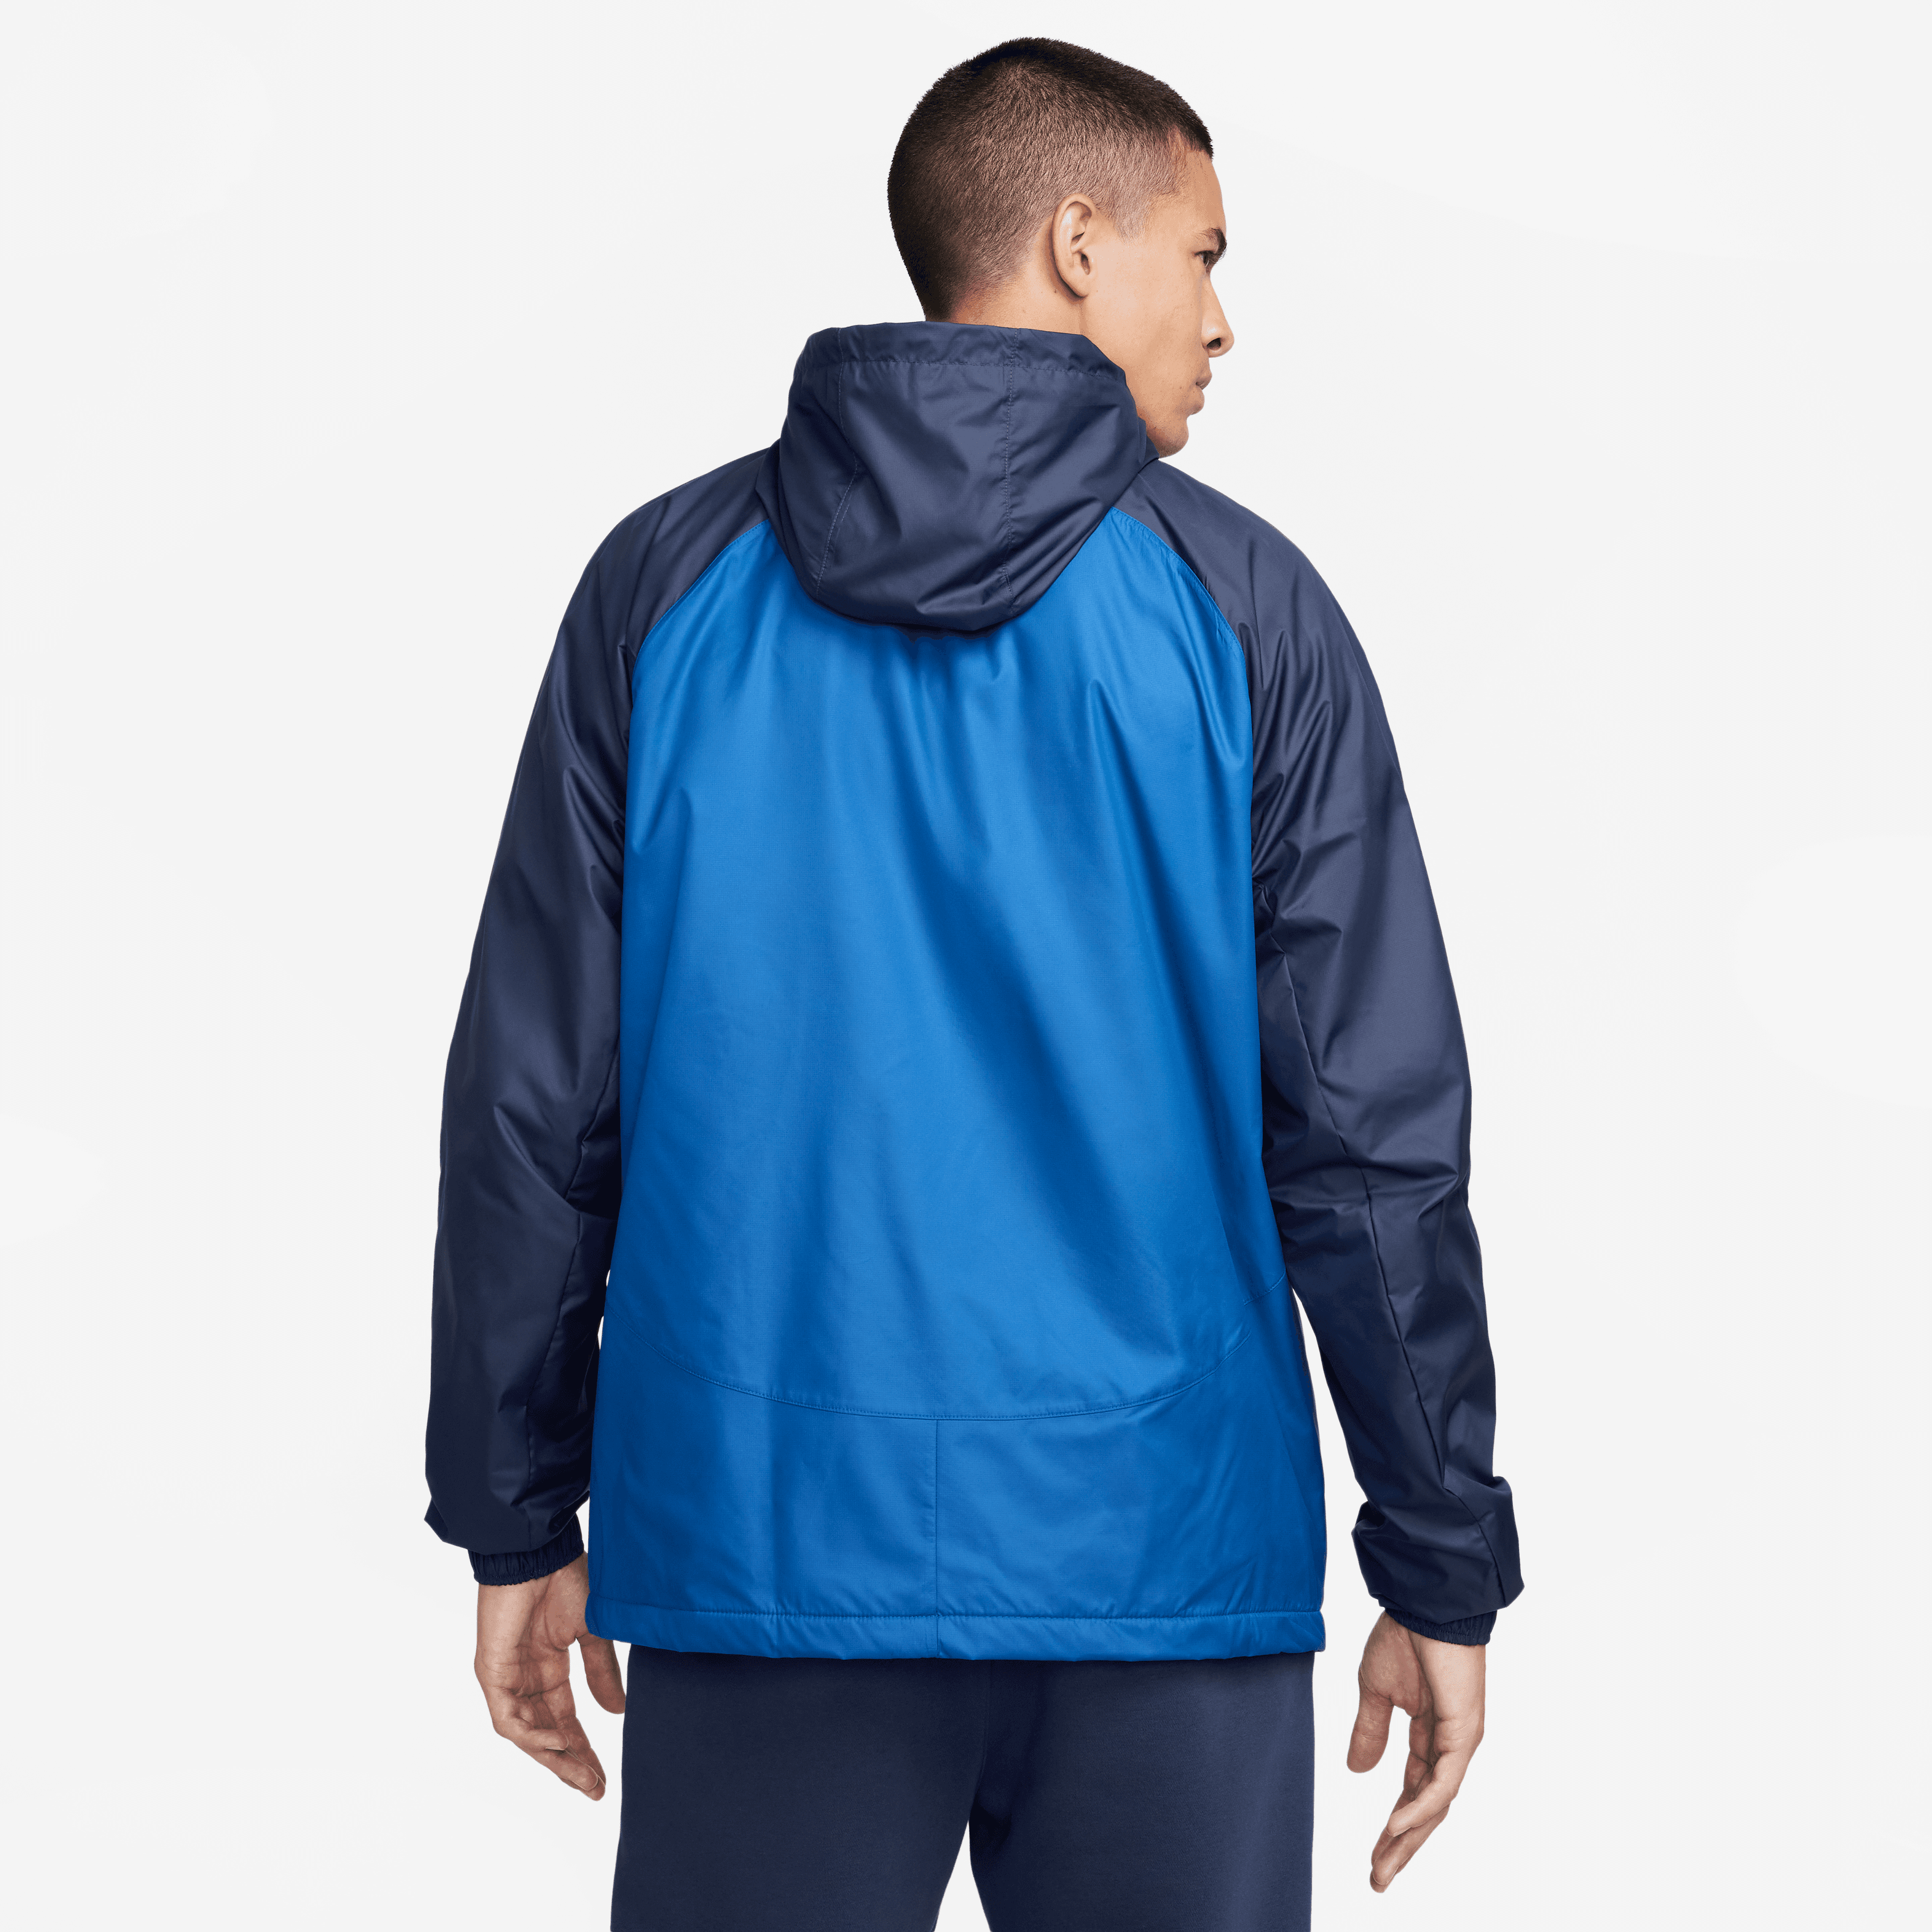 Nike Men's Club America Hoodie Jacket-Blue